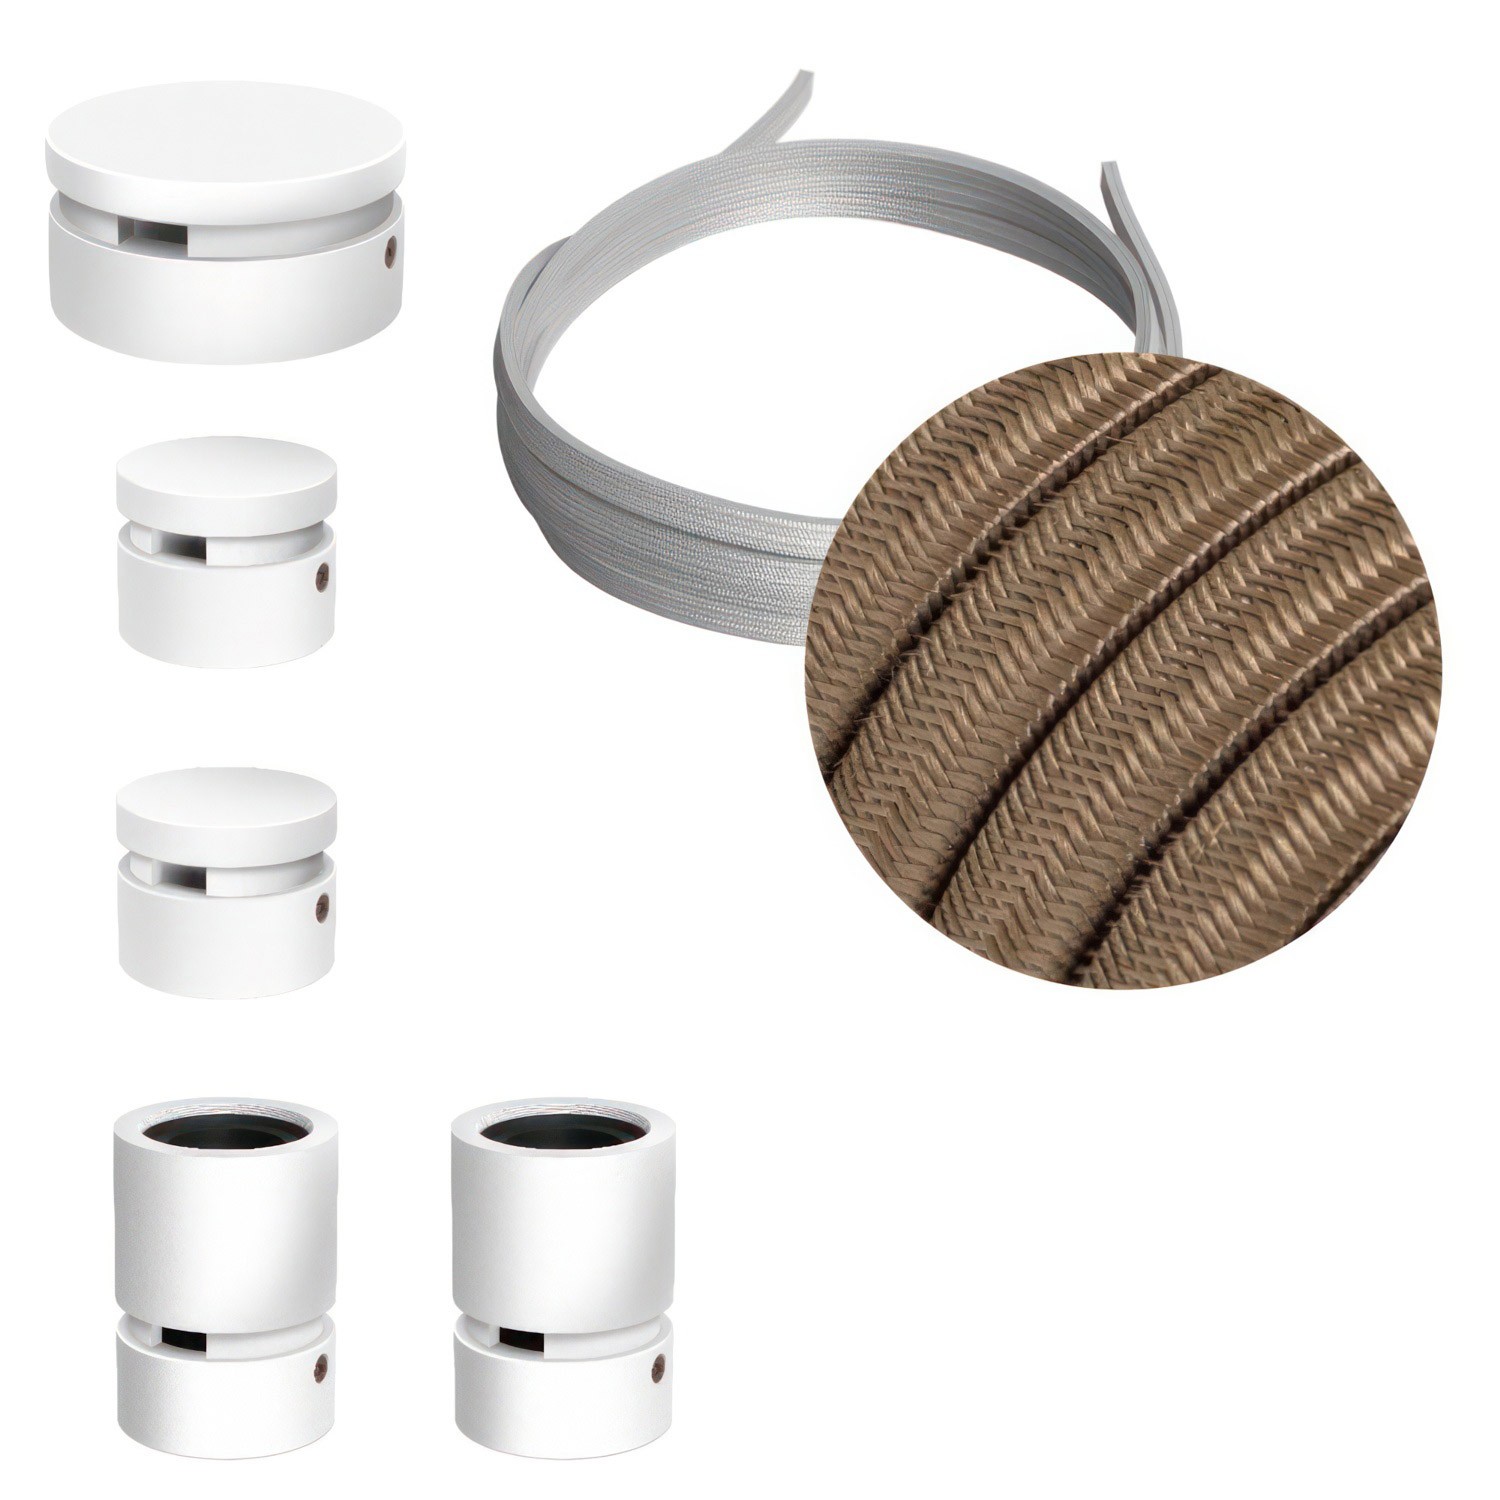 Kit Wiggle Filé system - avec câbles pour guirlande lumineuse de 3 mètres et 5 composants en bois verni blanc pour intérieur